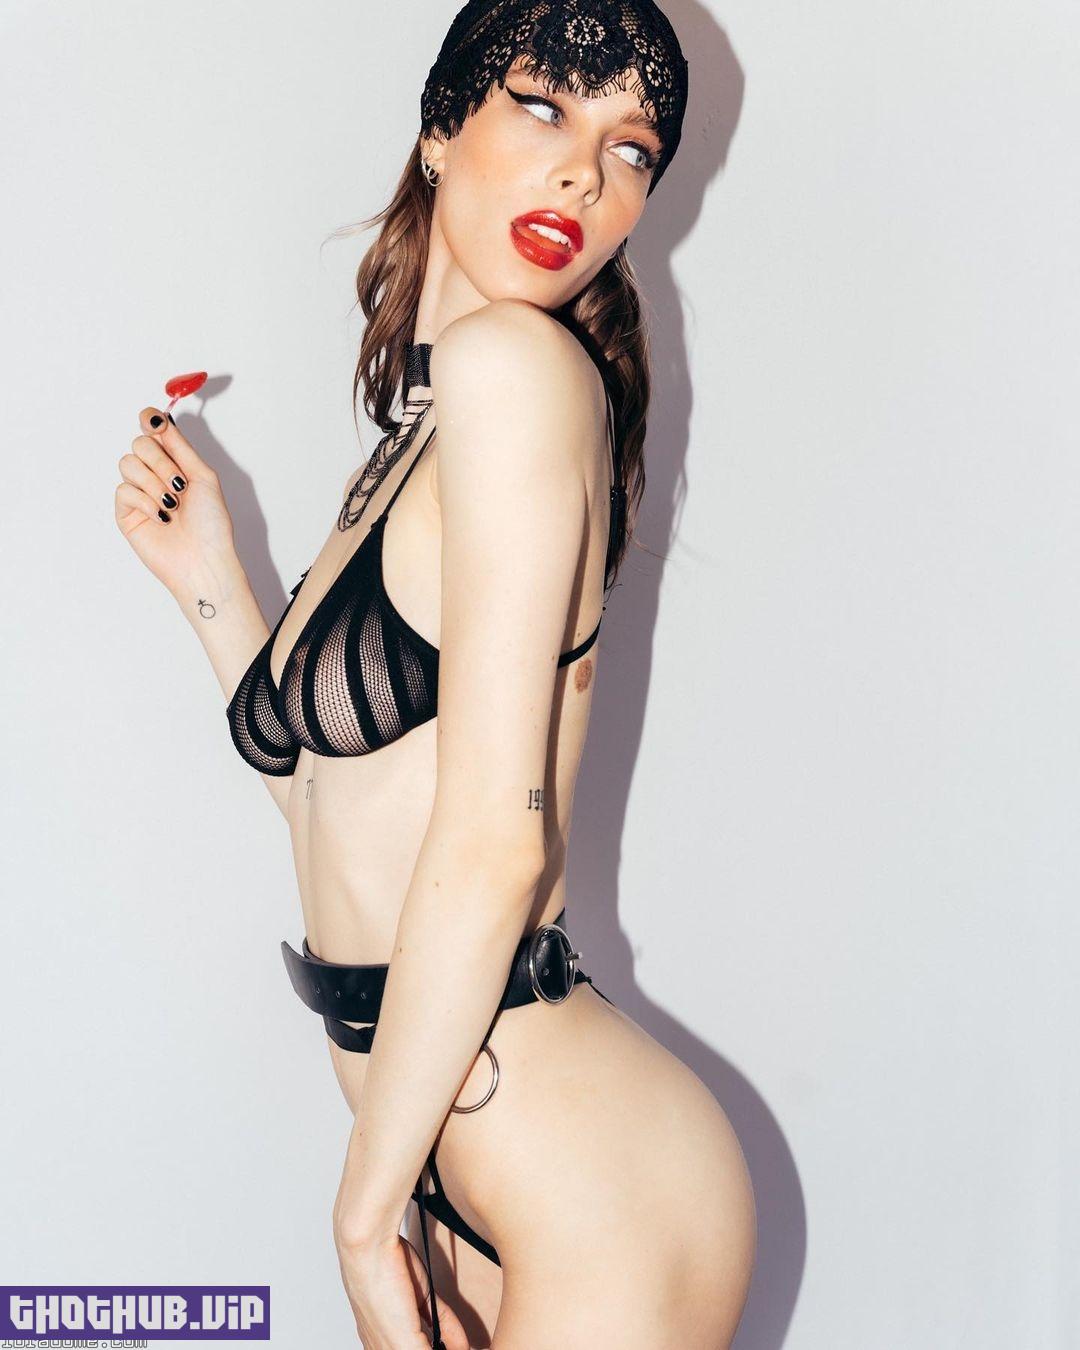 Ashley Matheson aka smashedely nude photo shoot